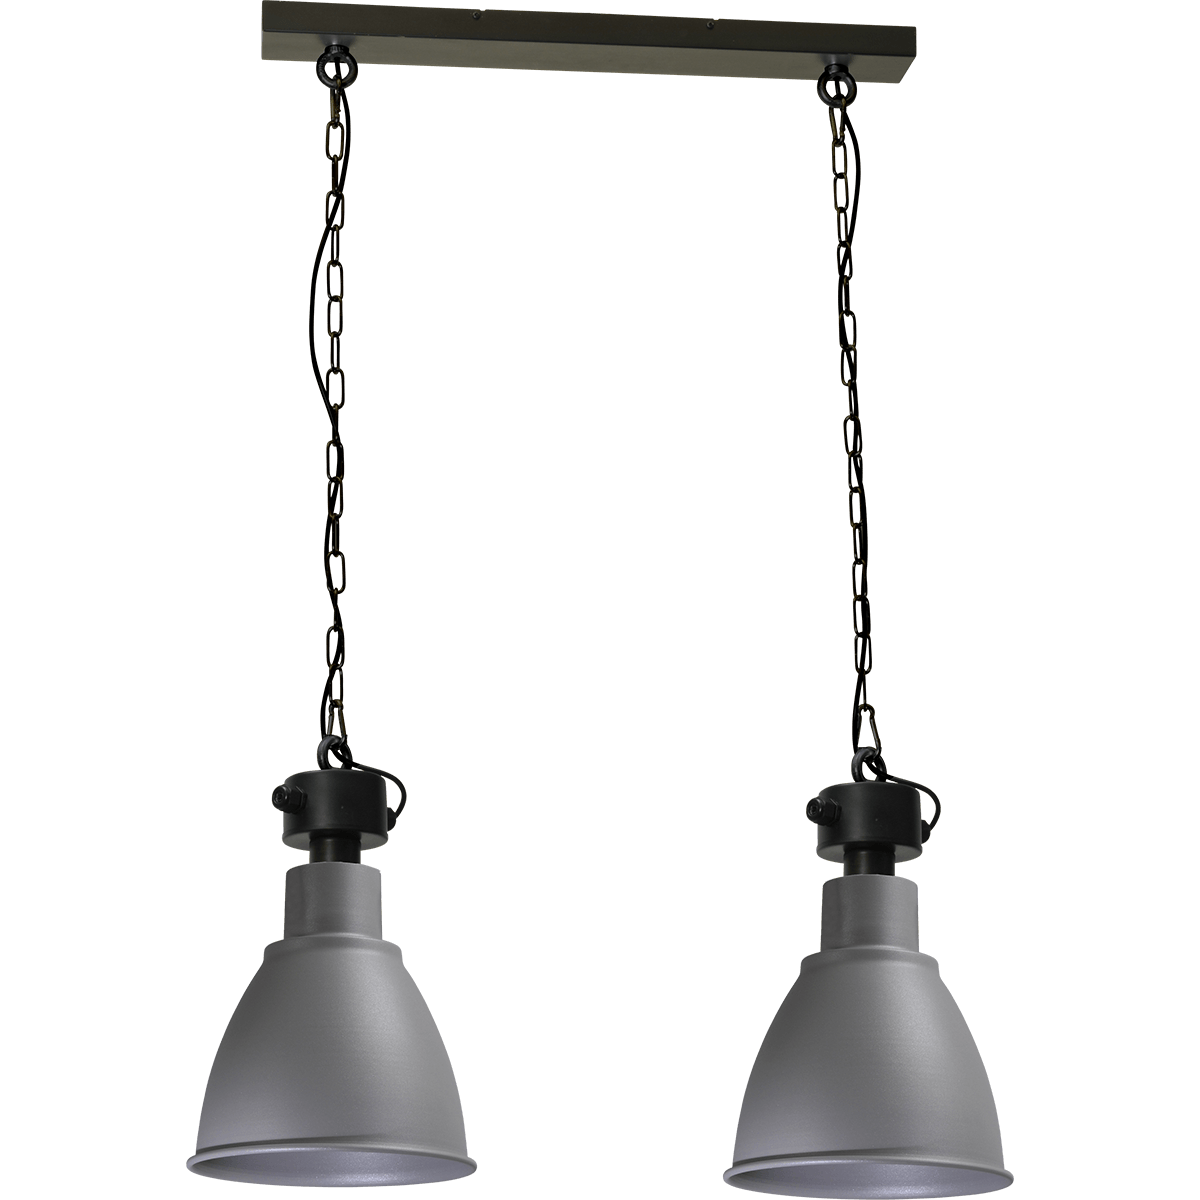 Industriële hanglamp Model 07  beton look 2-lichts